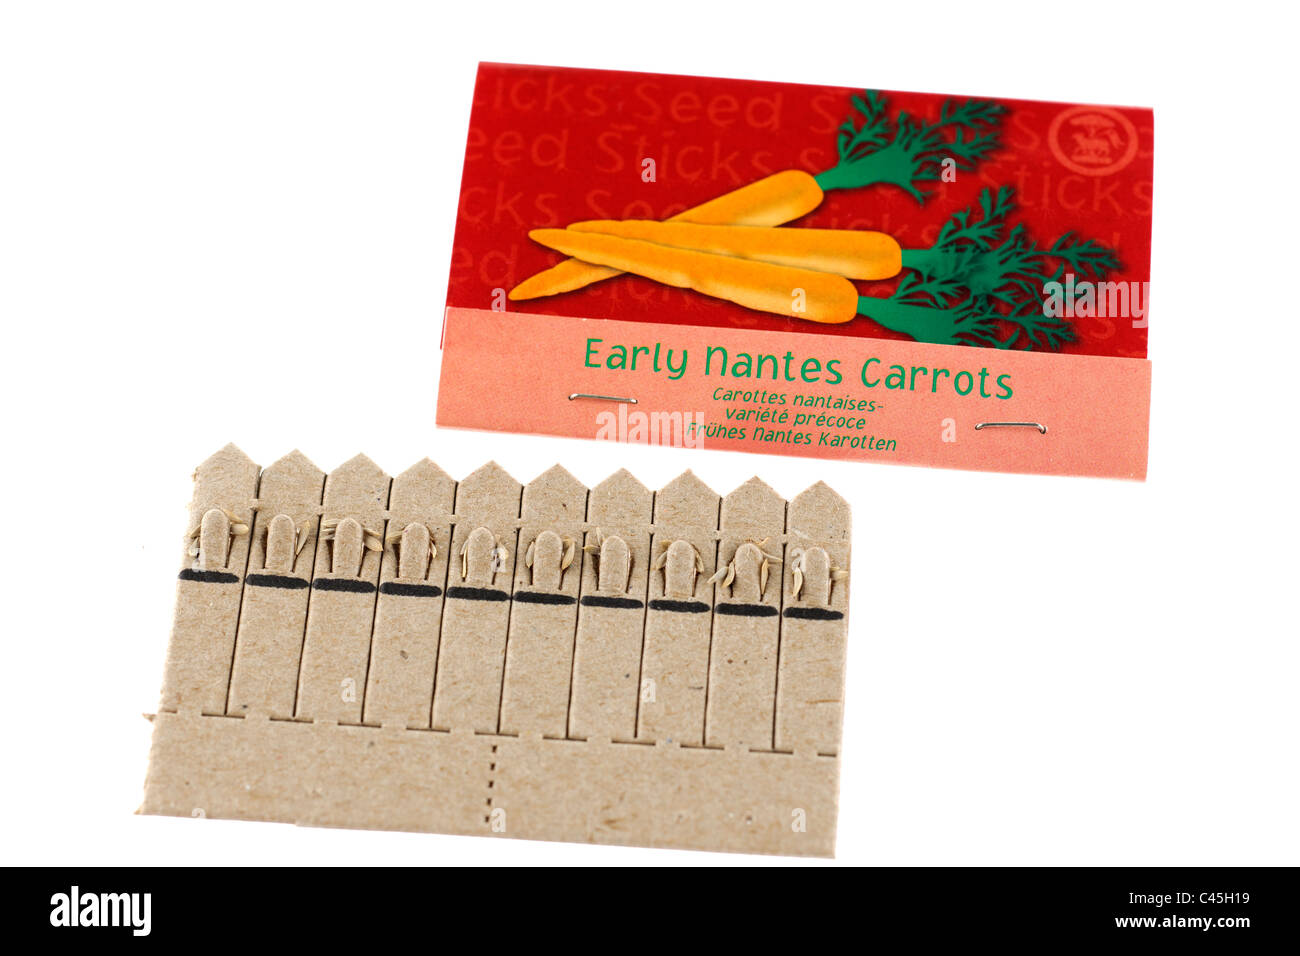 Paquet de bâtonnets de graines de laitue petit bijou et au début de Nantes les carottes Banque D'Images